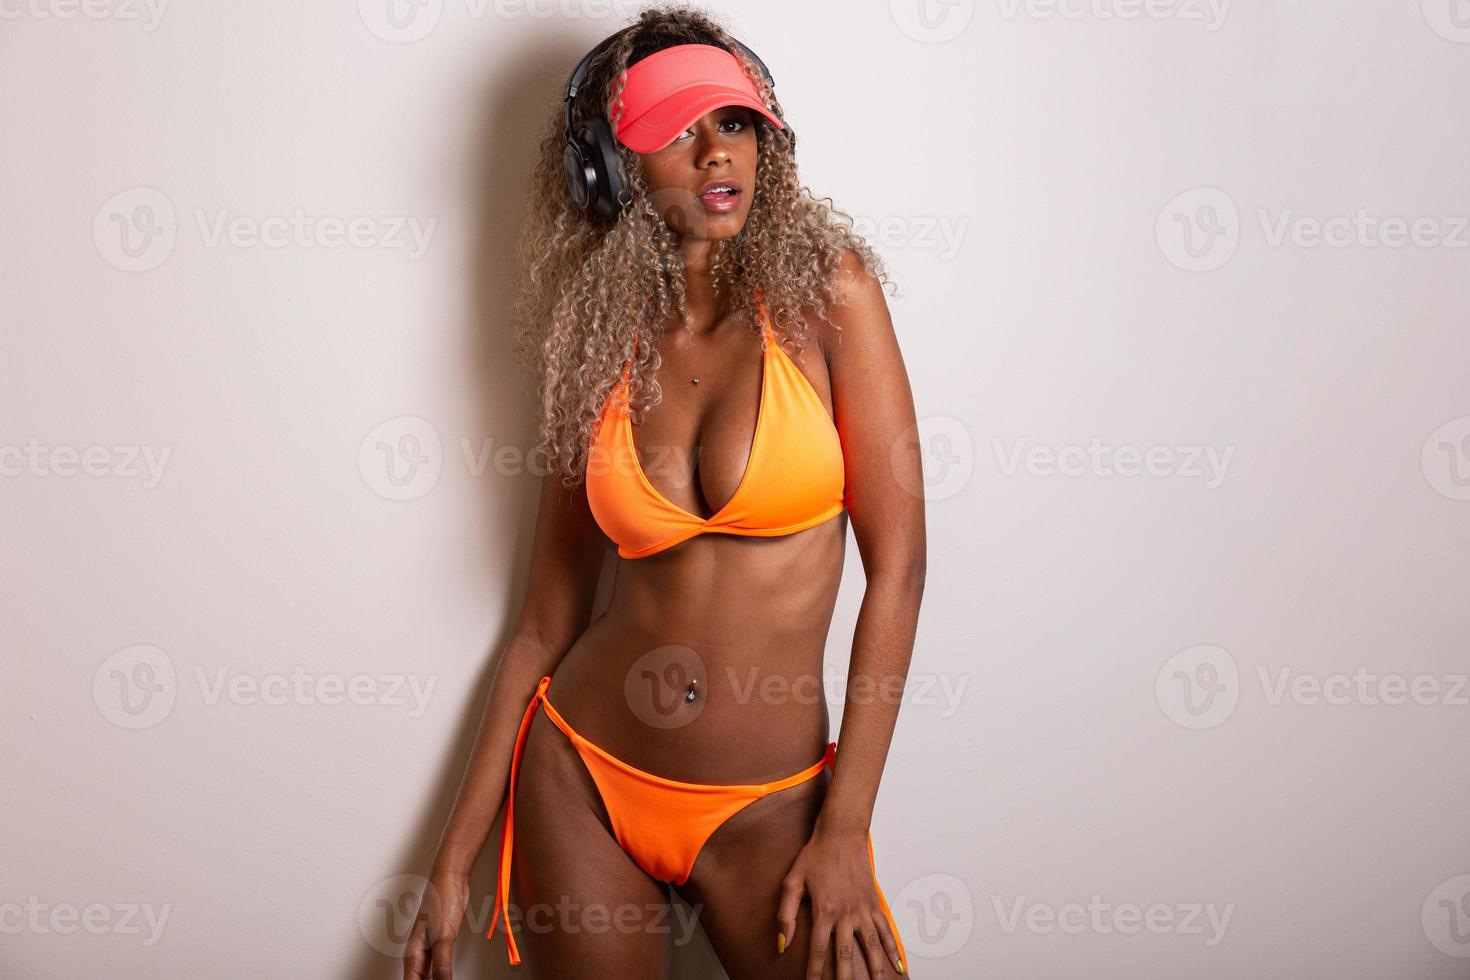 atractiva chica de pelo rizado en bikini naranja, sombrero, boca abierta emocionalmente sobre un fondo blanco con un cuerpo perfecto. aislado. foto de estudio